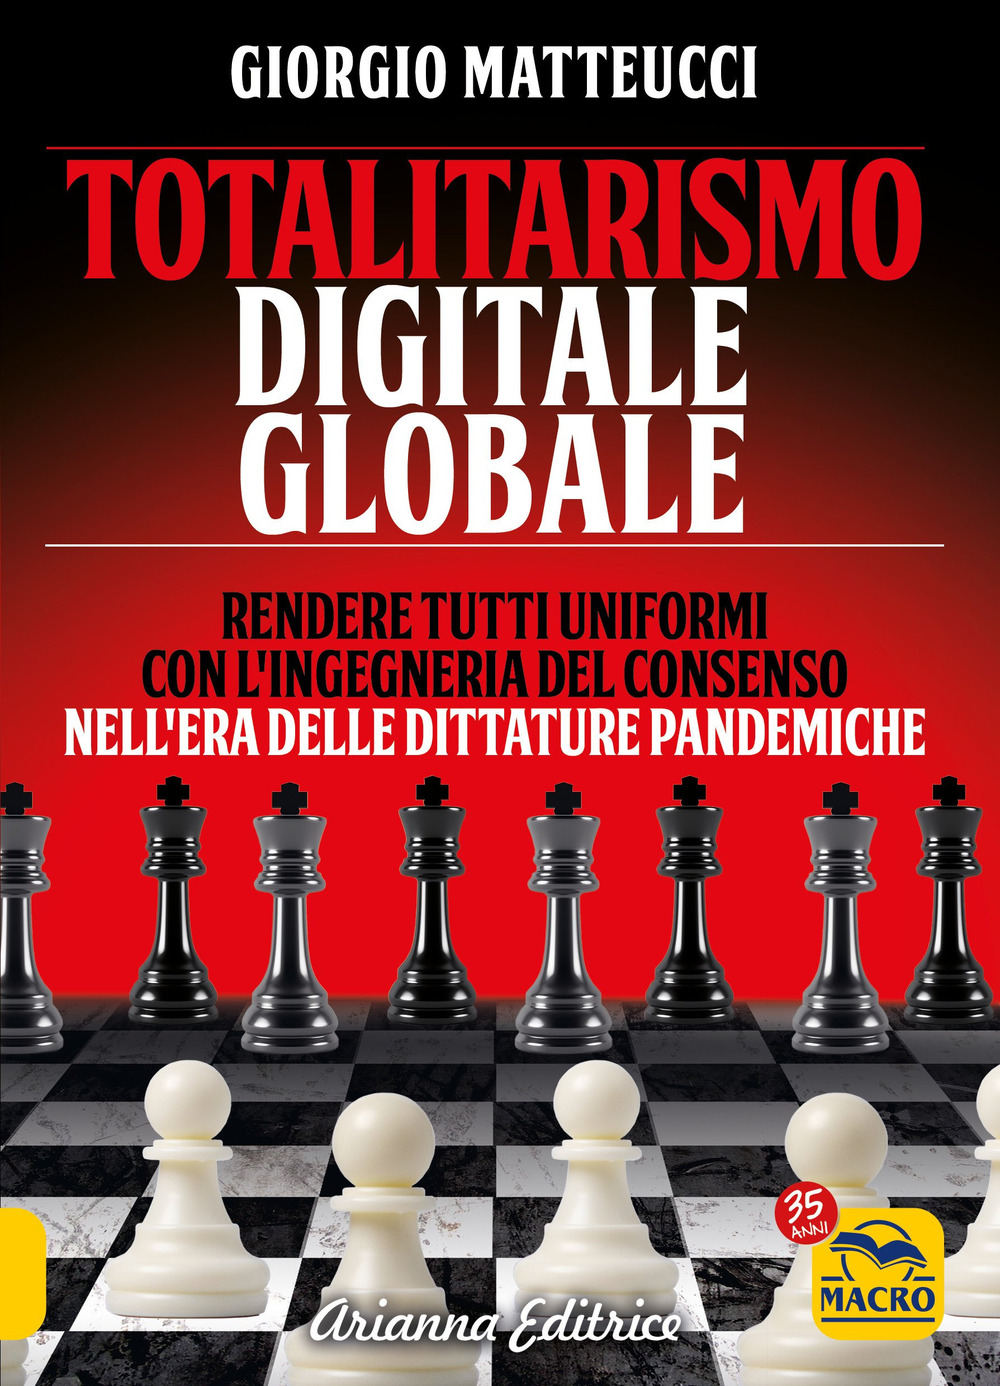 Image of Totalitarismo digitale globale. Sincronizzazione e ingegneria del consenso nell'era delle dittature pandemiche